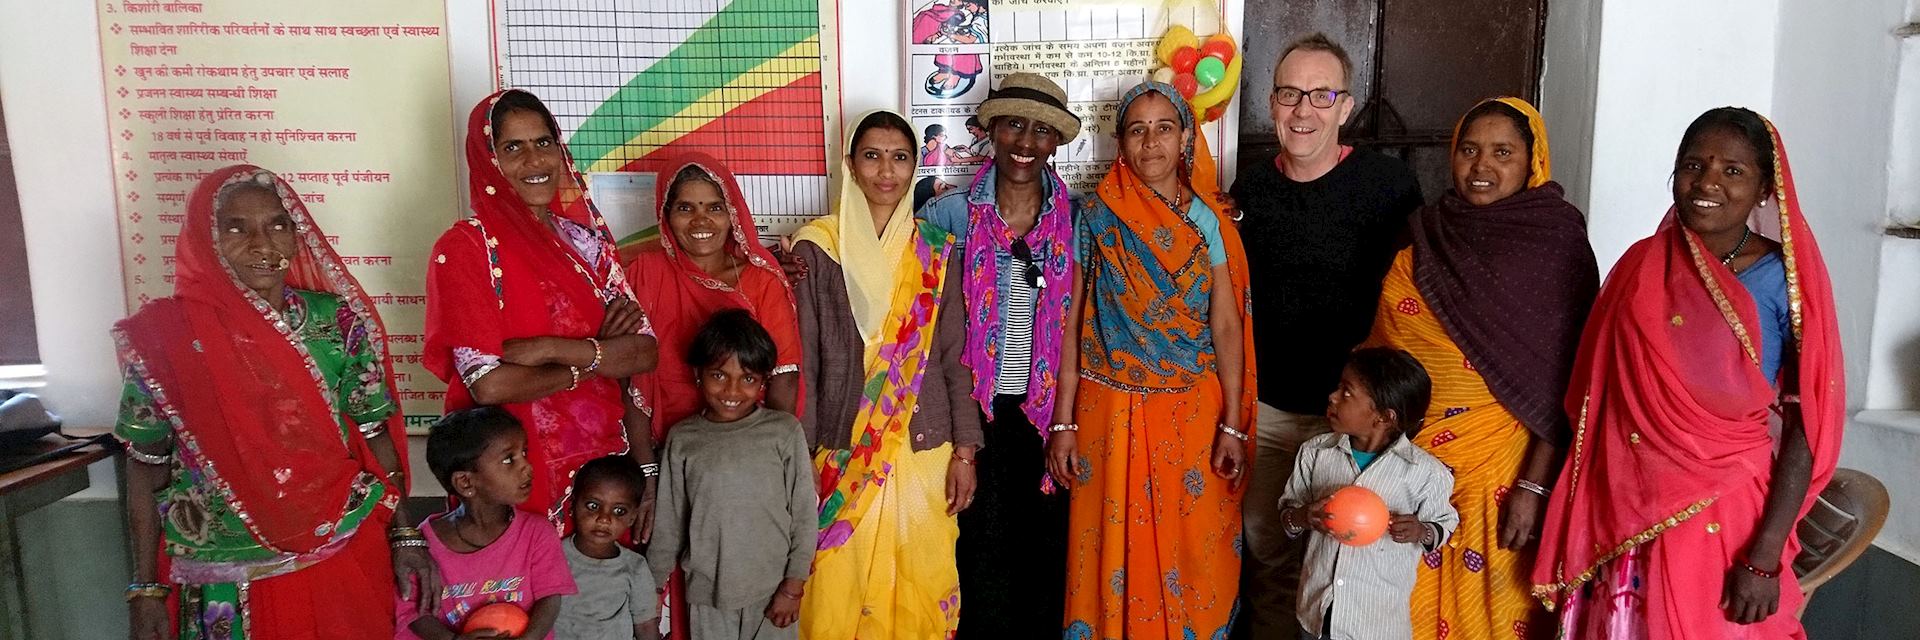 Ladies at the health centre in Araveli, India